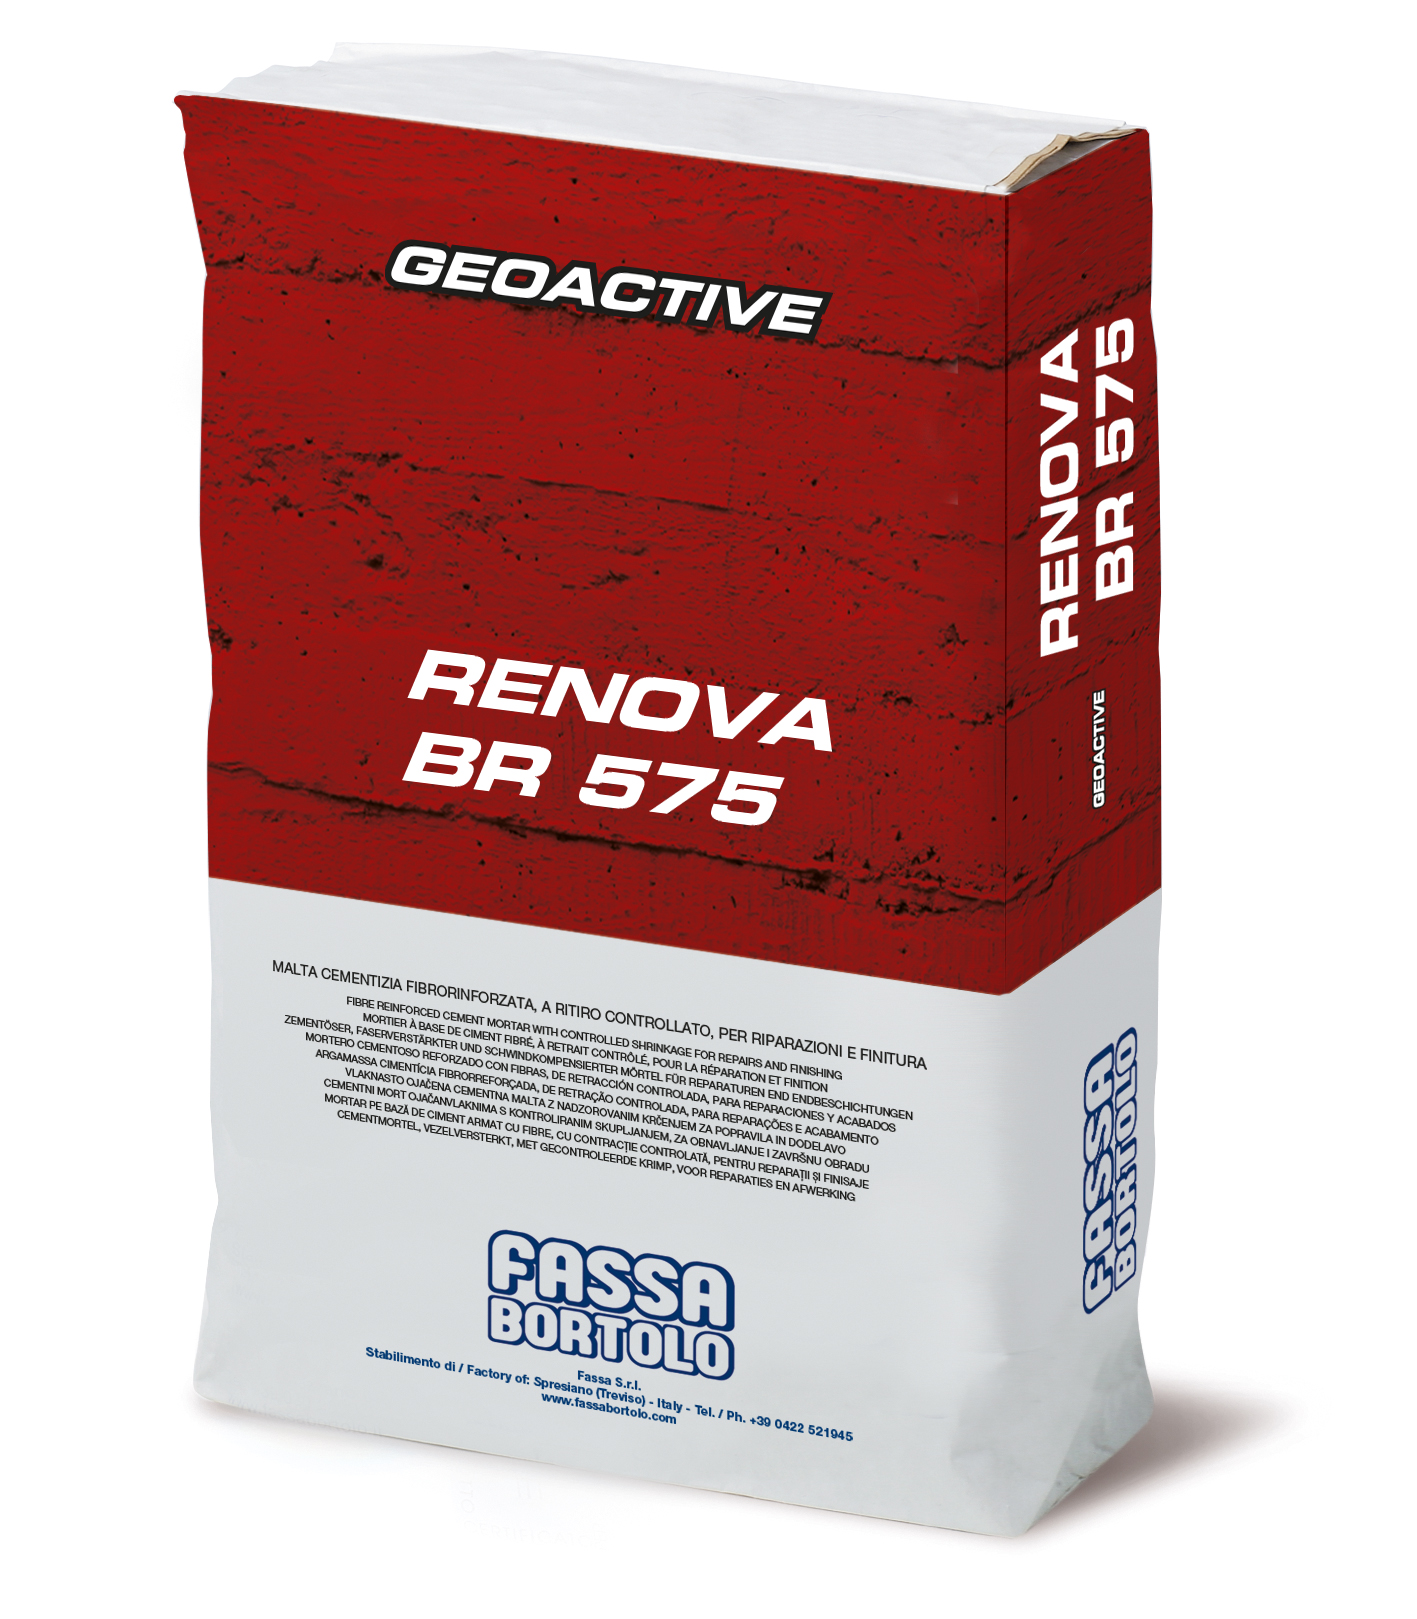 RENOVA BR 575: Mortero cementoso monocomponente, tixotrópico, reforzado con fibra, de fraguado rápido, de retracción compensada para reparaciones y acabados de hormigón